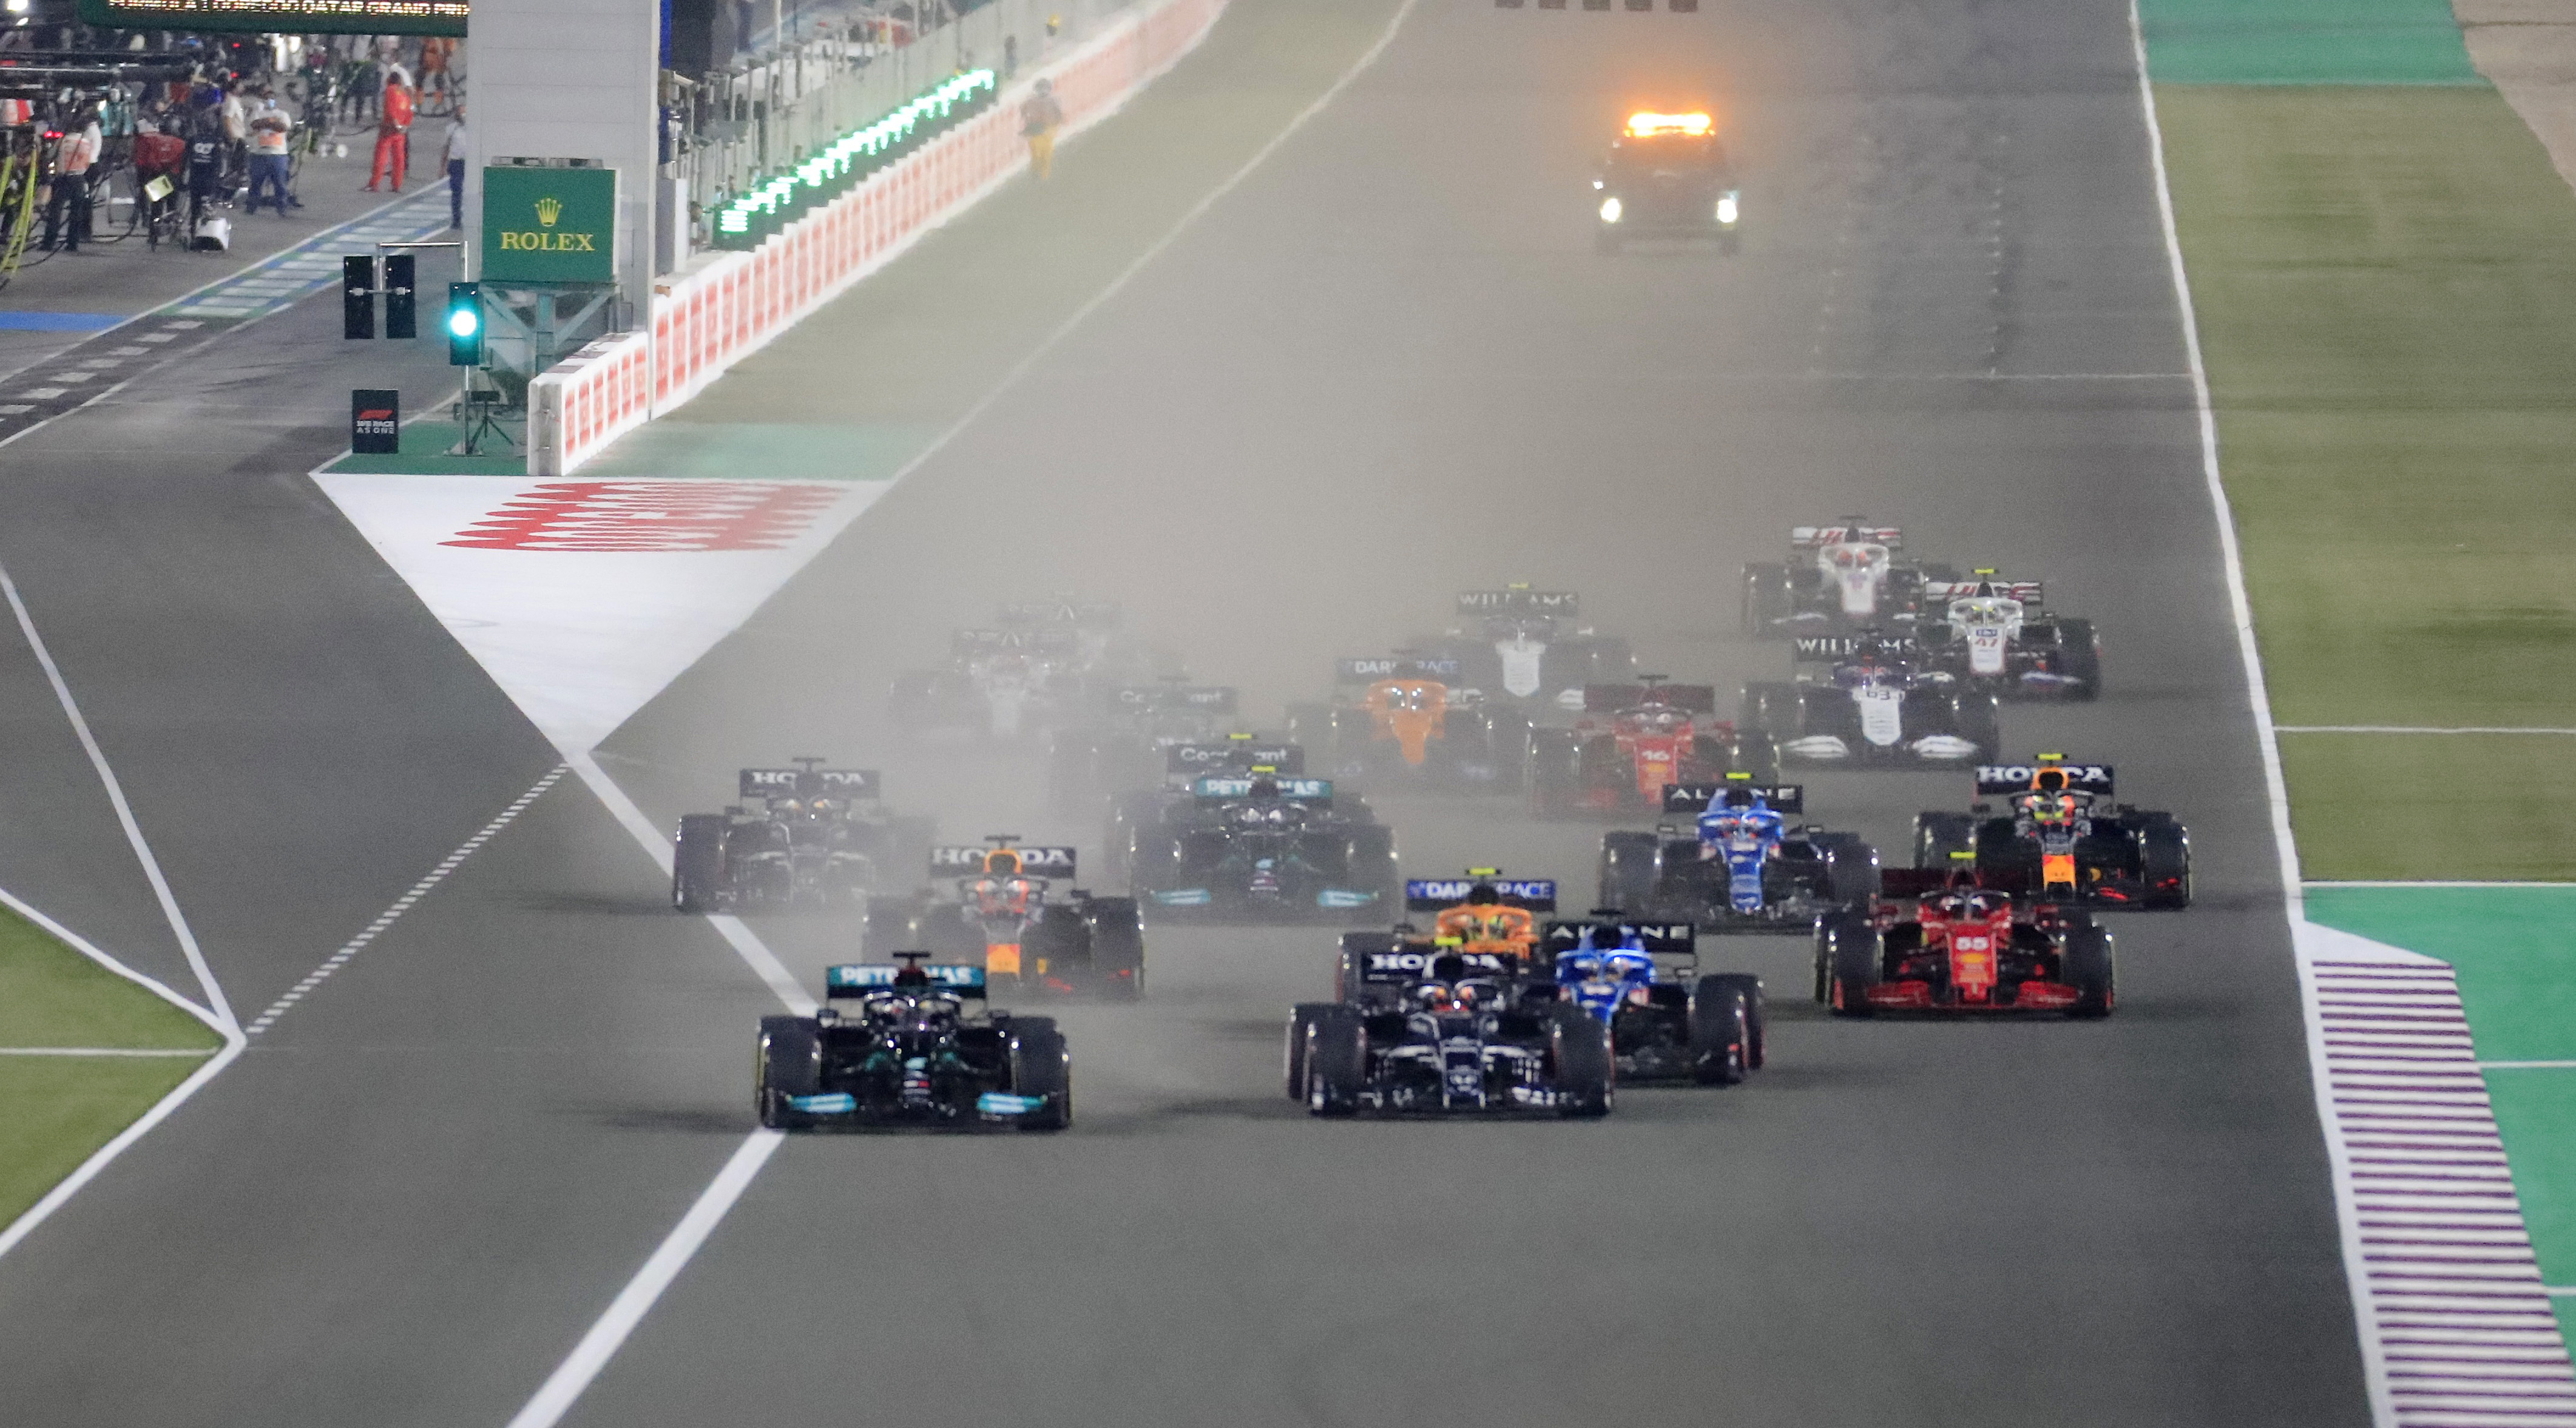 Largada del Gran Premio de Qatar con Lewis Hamilton como líder de la carrera (REUTERS/Thaier Al-Sudani)